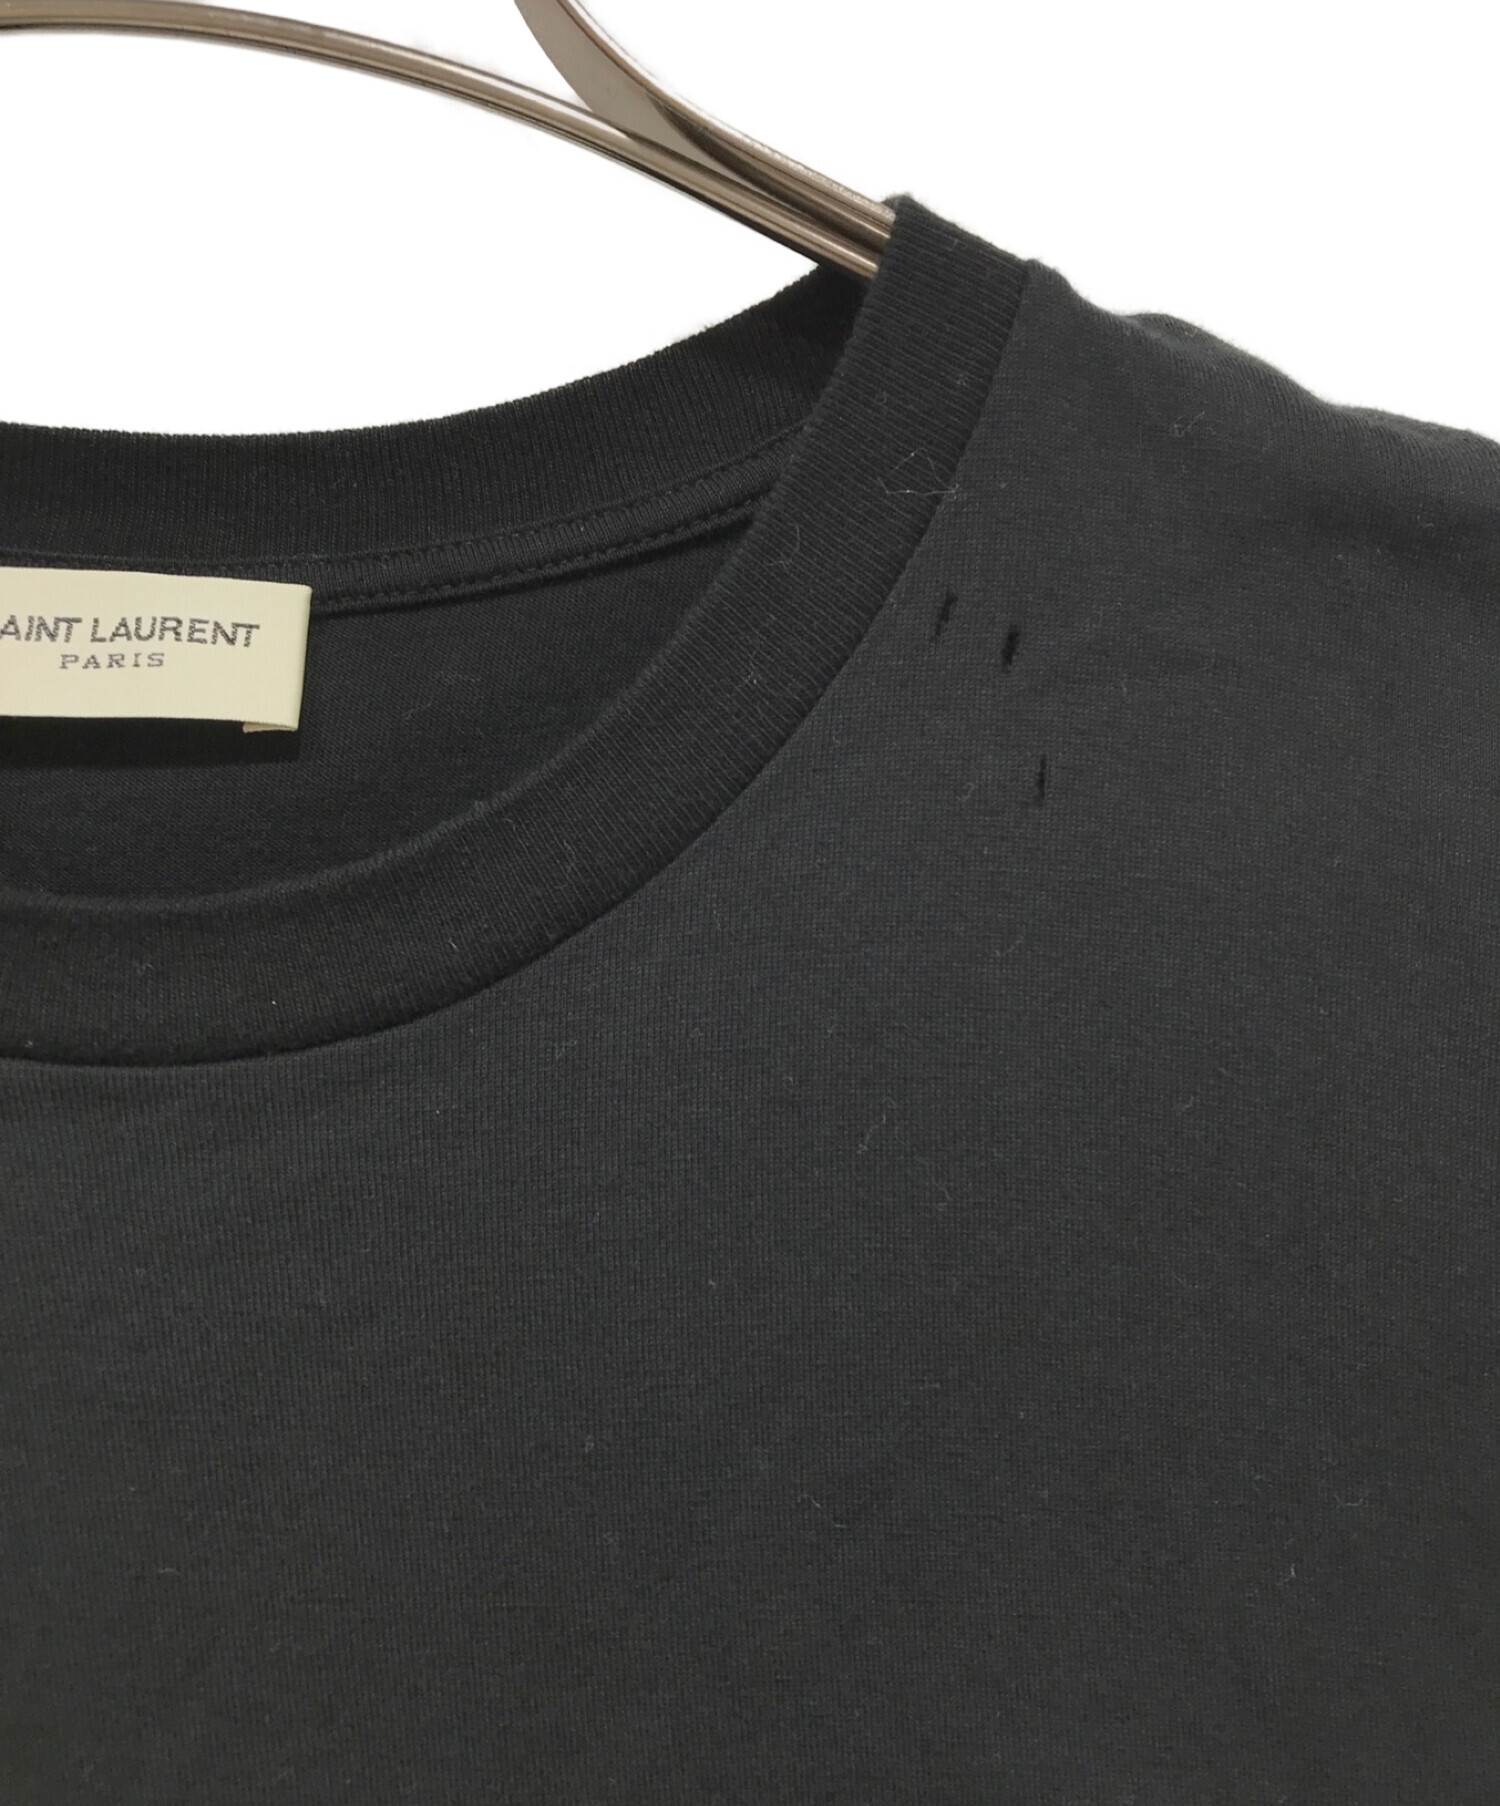 【希少XLサイズ】サンローランパリ ダメージ加工 クラシックロゴ Tシャツ 正規